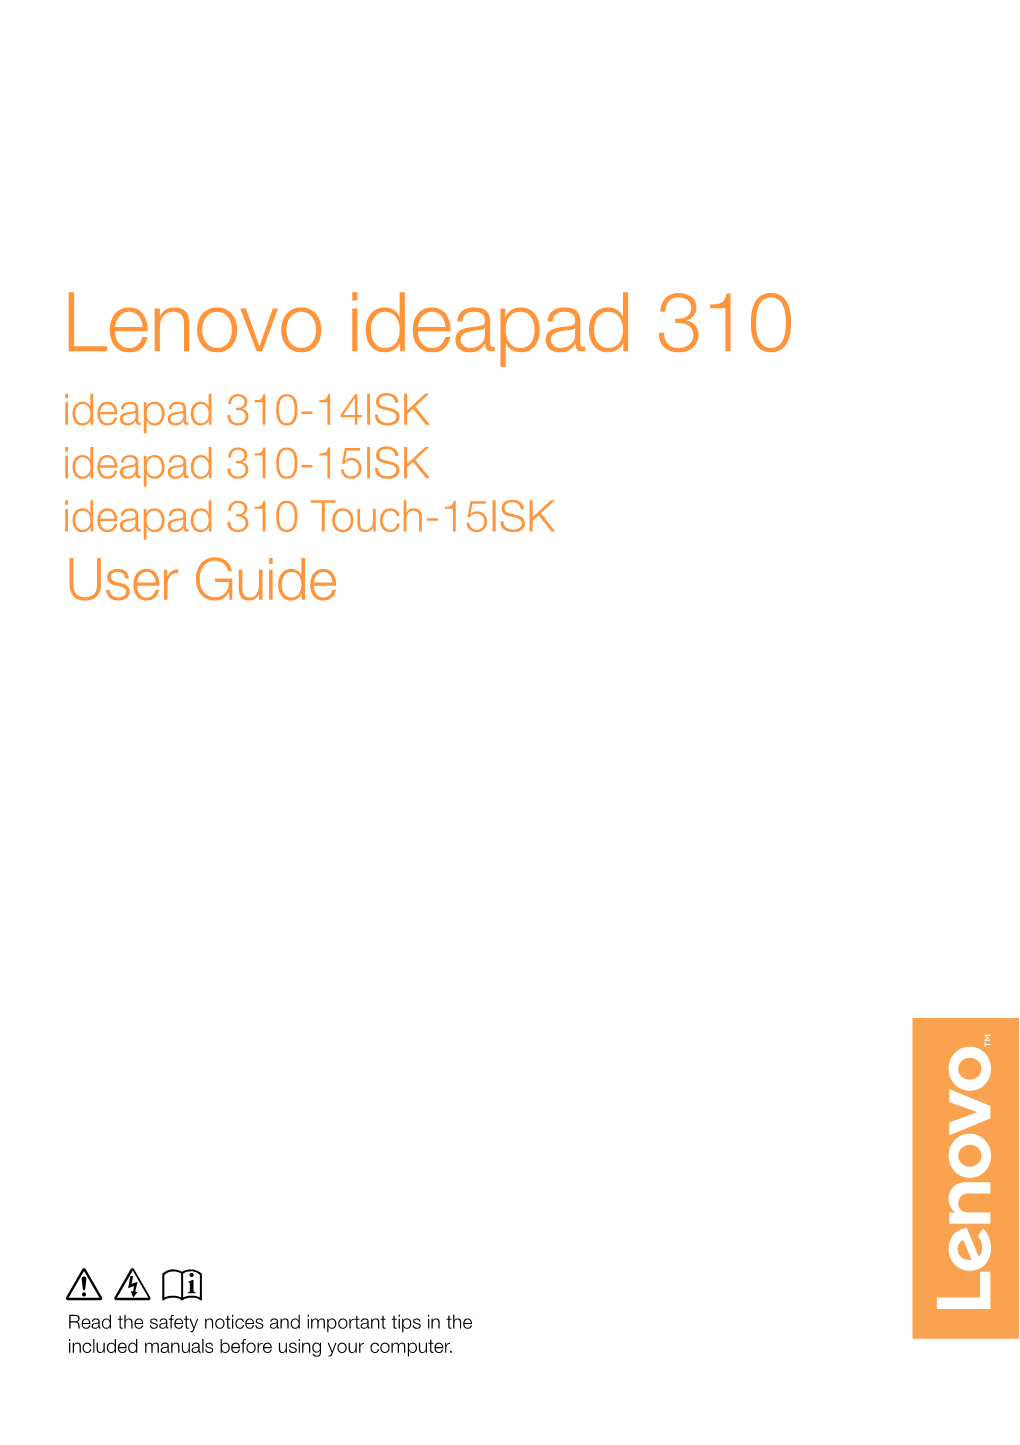 Lenovo Ideapad 310 Ideapad 310-14ISK Ideapad 310-15ISK Ideapad 310 Touch-15ISK User Guide